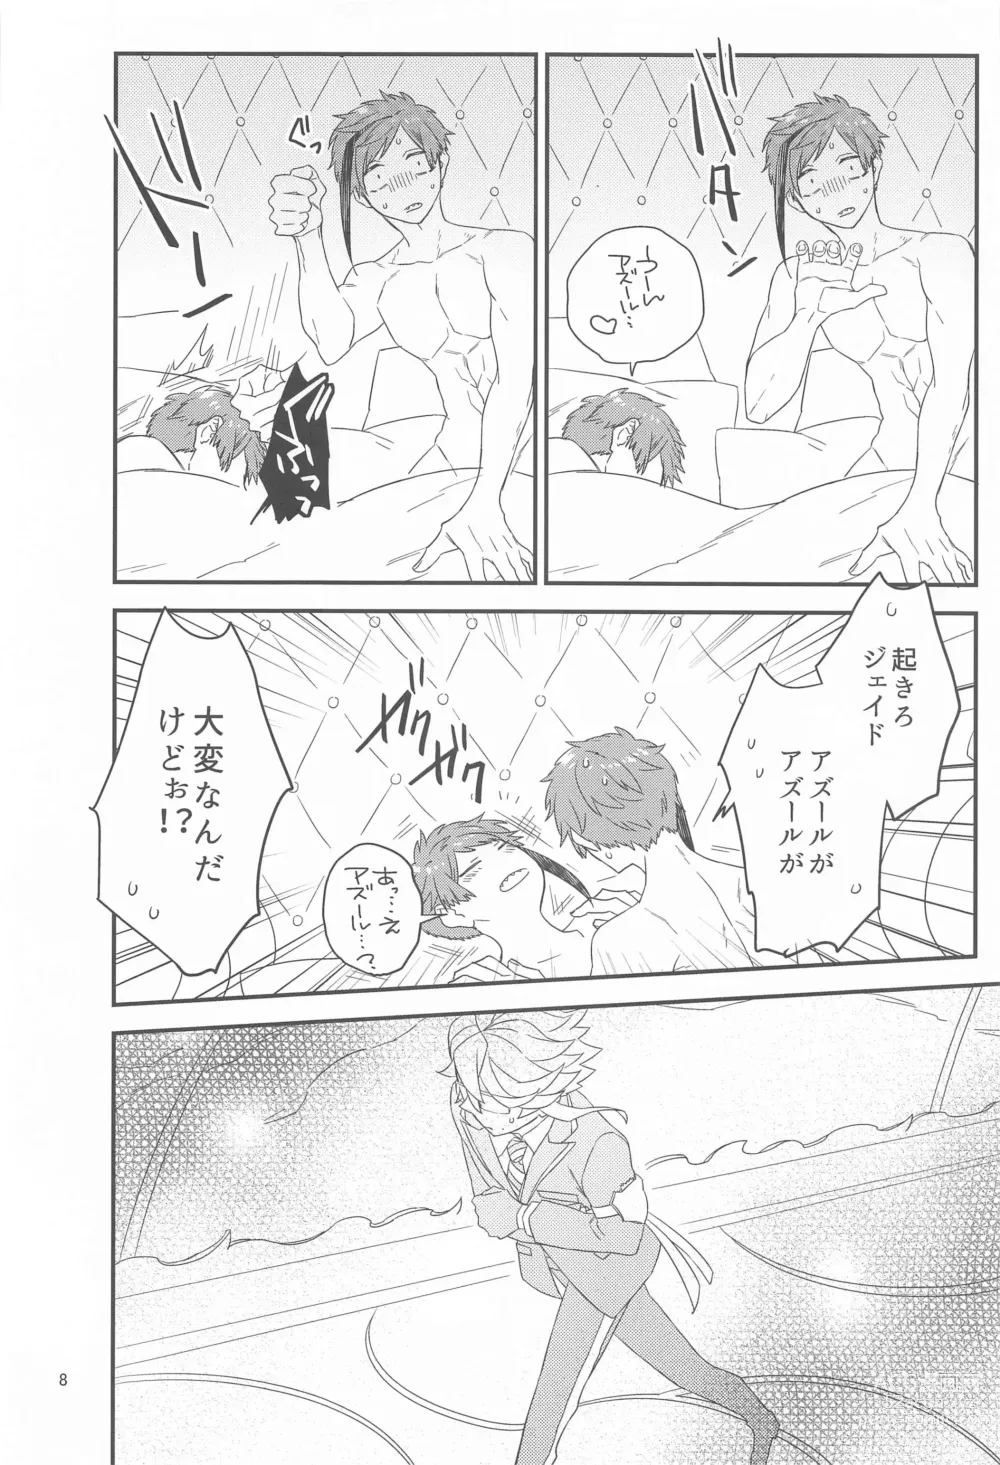 Page 7 of doujinshi Please Don’t Run Away!